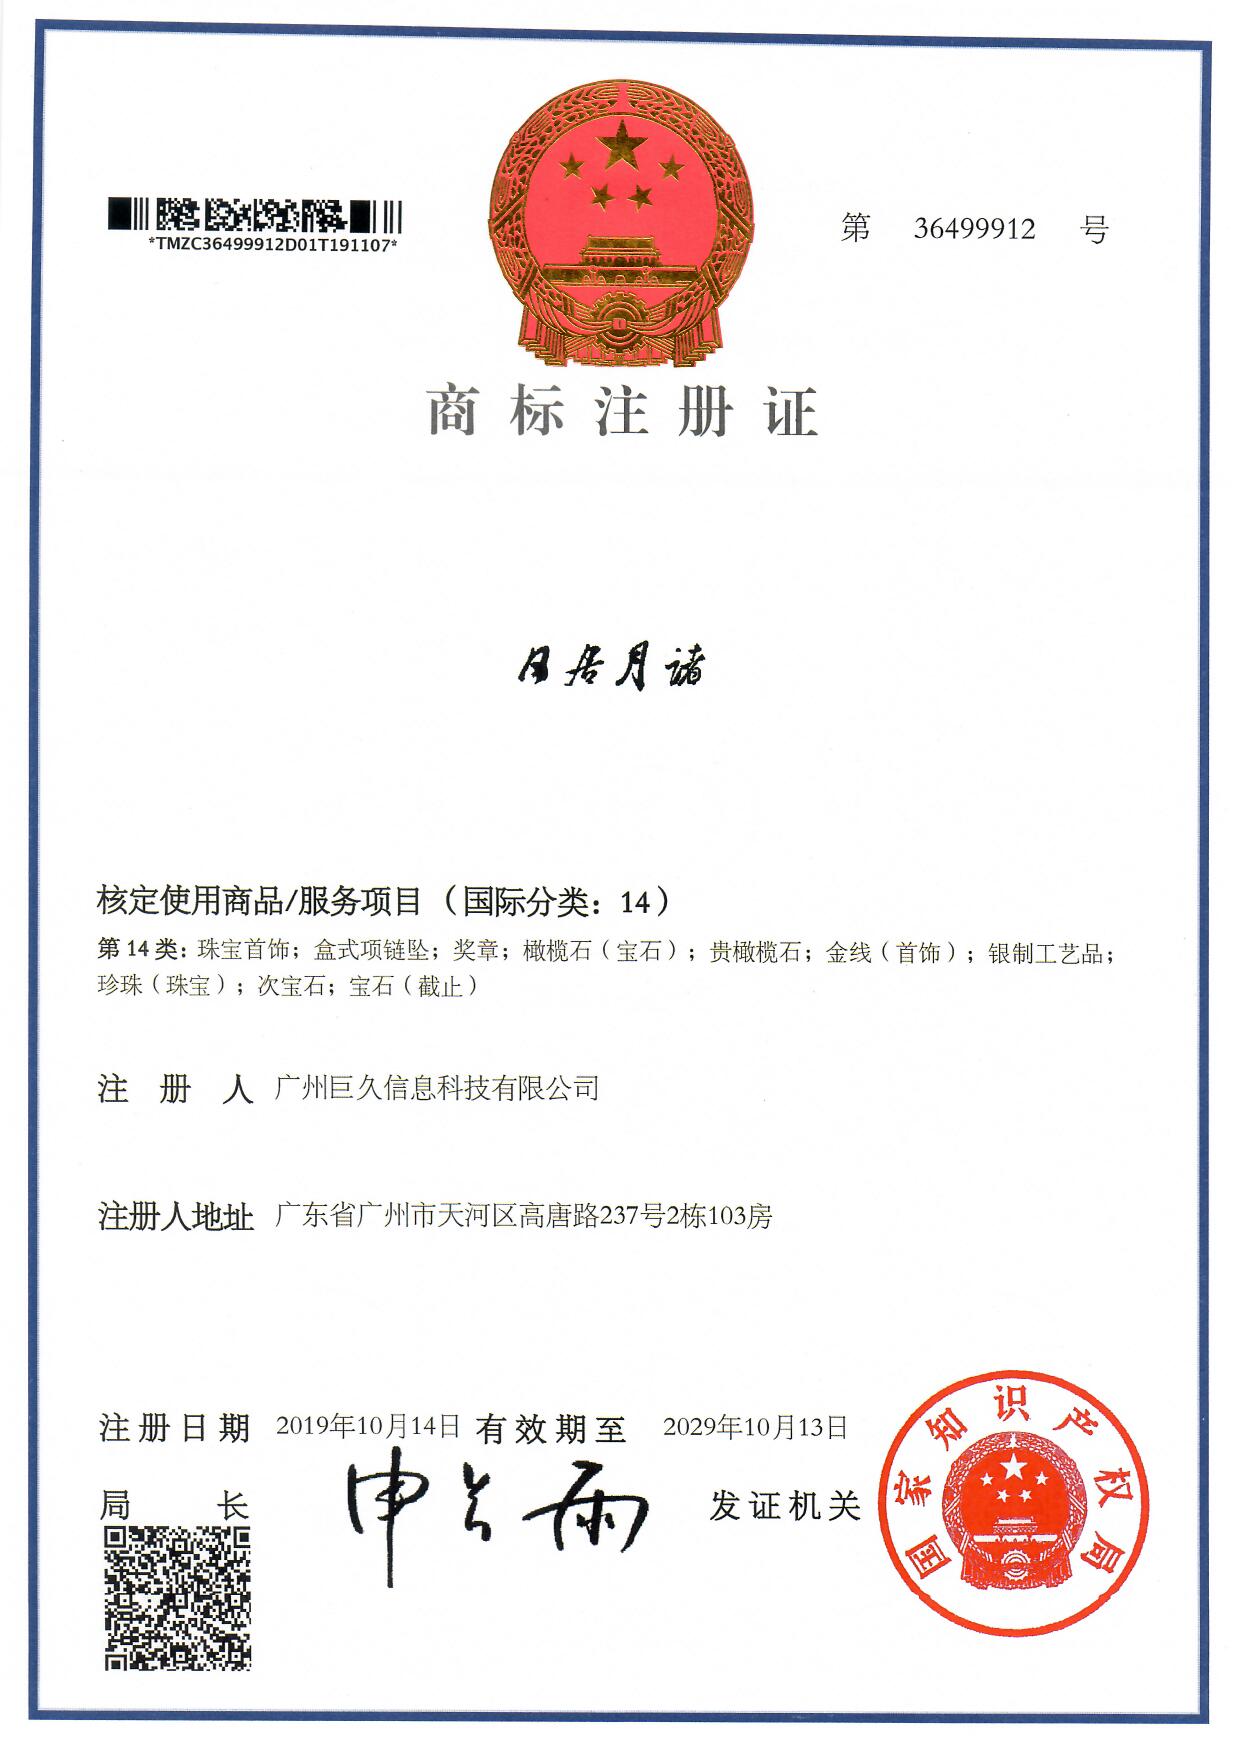 广州巨久信息科技有限公司商标证书36499912.jpg